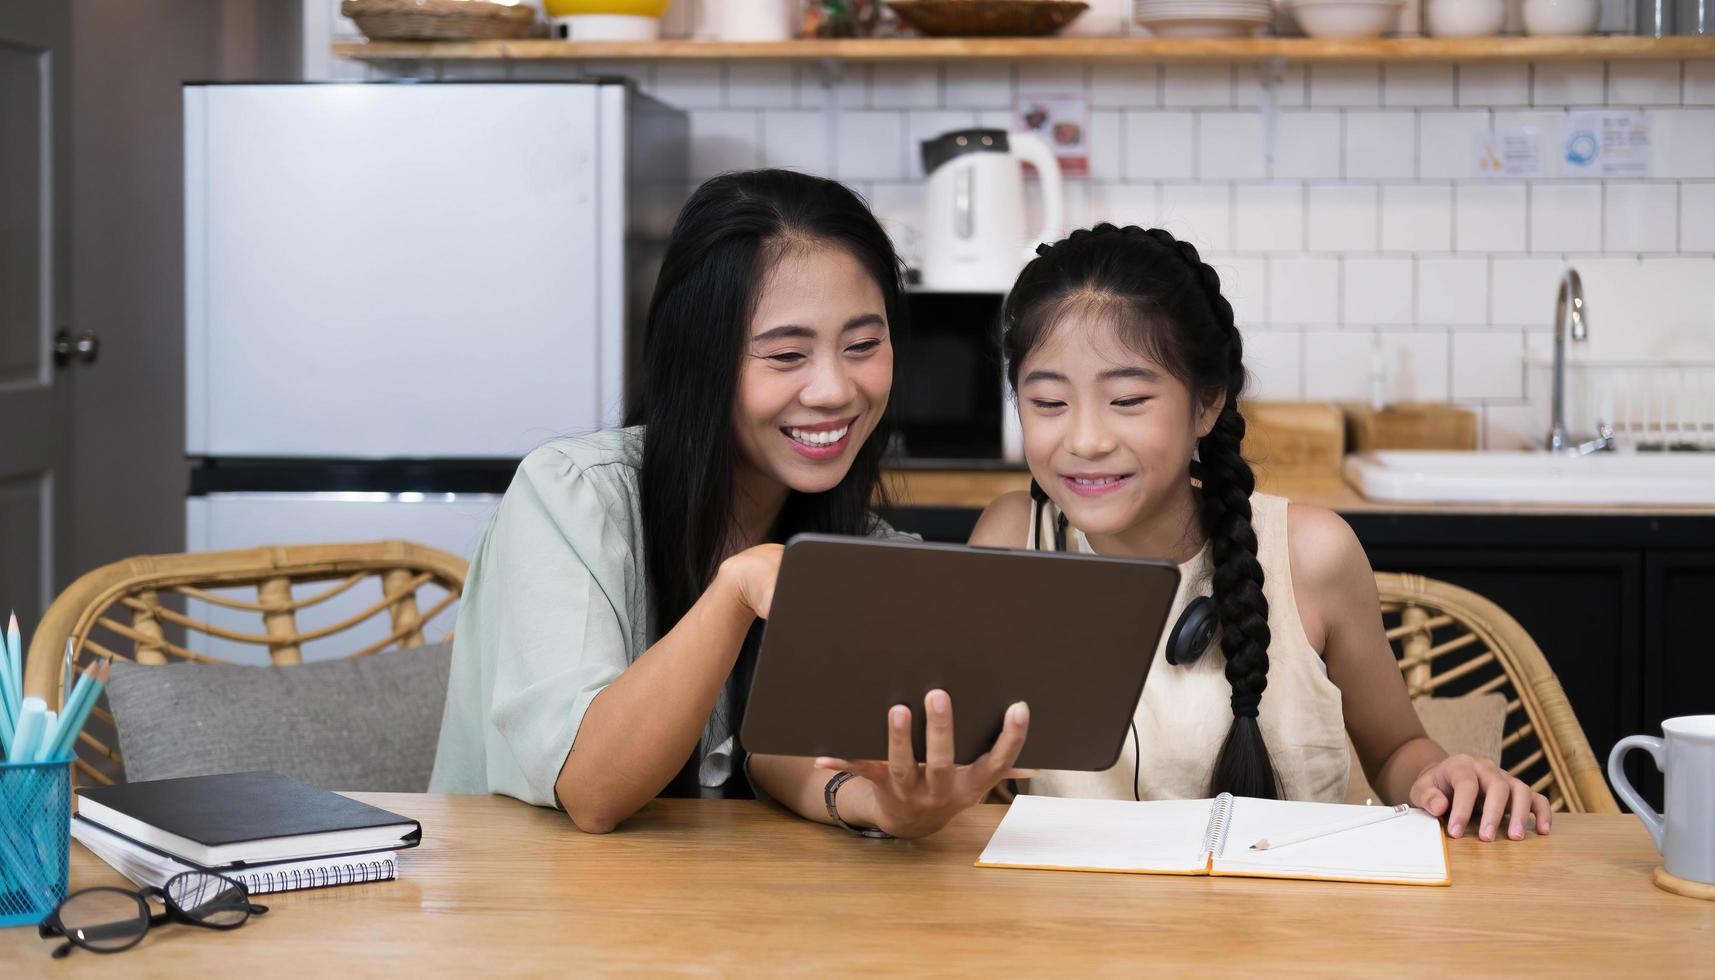 mamma och asiatiskt barn liten flicka som lär sig och tittar på bärbar dator gör läxor studerar med online-utbildning e-lärningssystem. barn videokonferens med lärare handledare hemma foto